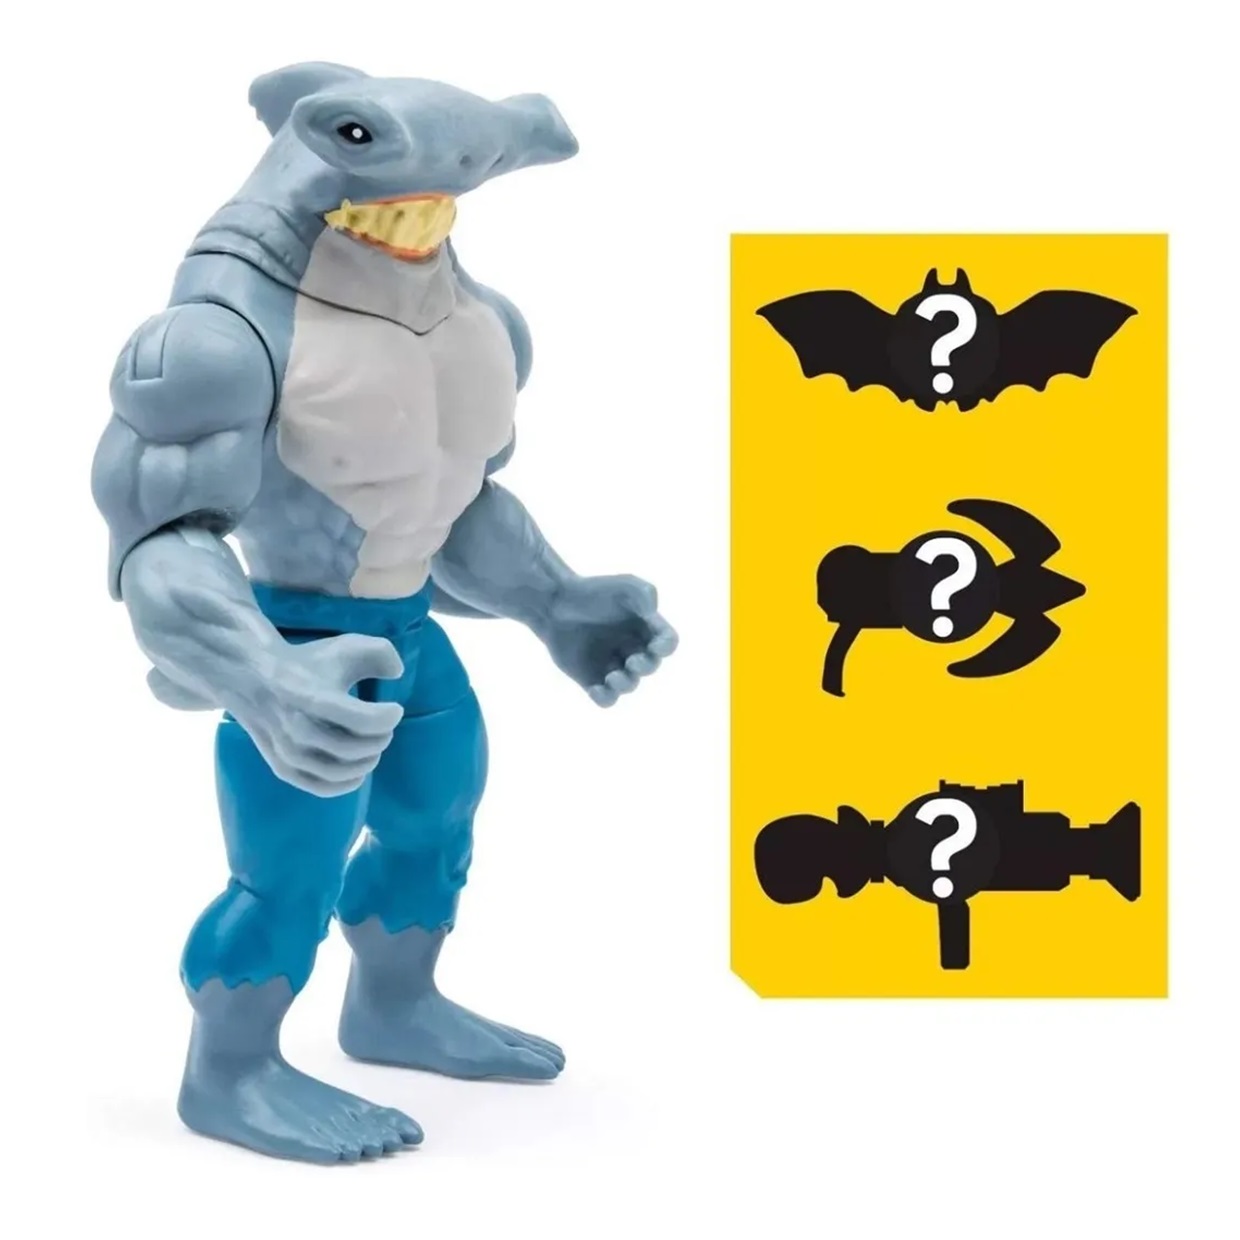 Pack King Shark + Man Bat The Caped Crusader Spin Master